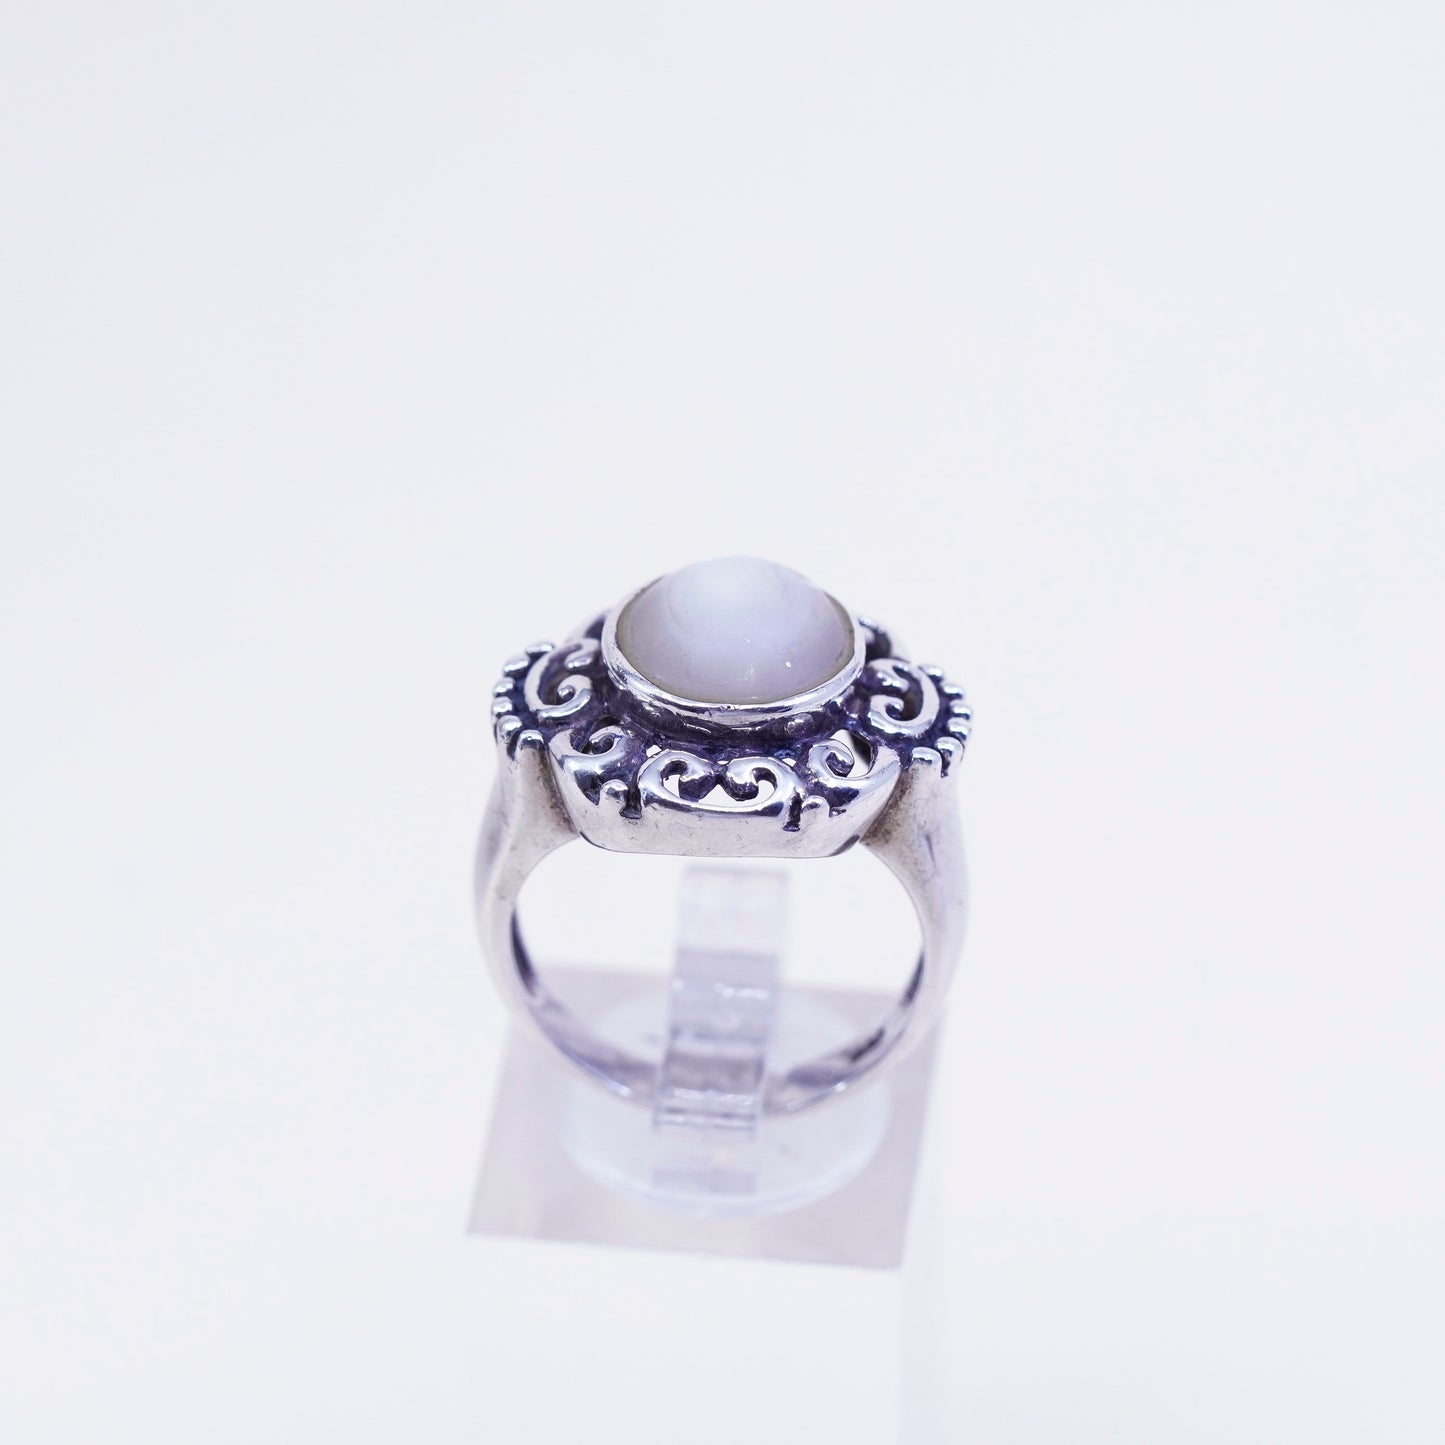 Size 8.25, vintage CFJ sterling 925 silver handmade filigree ring w/ moonstone